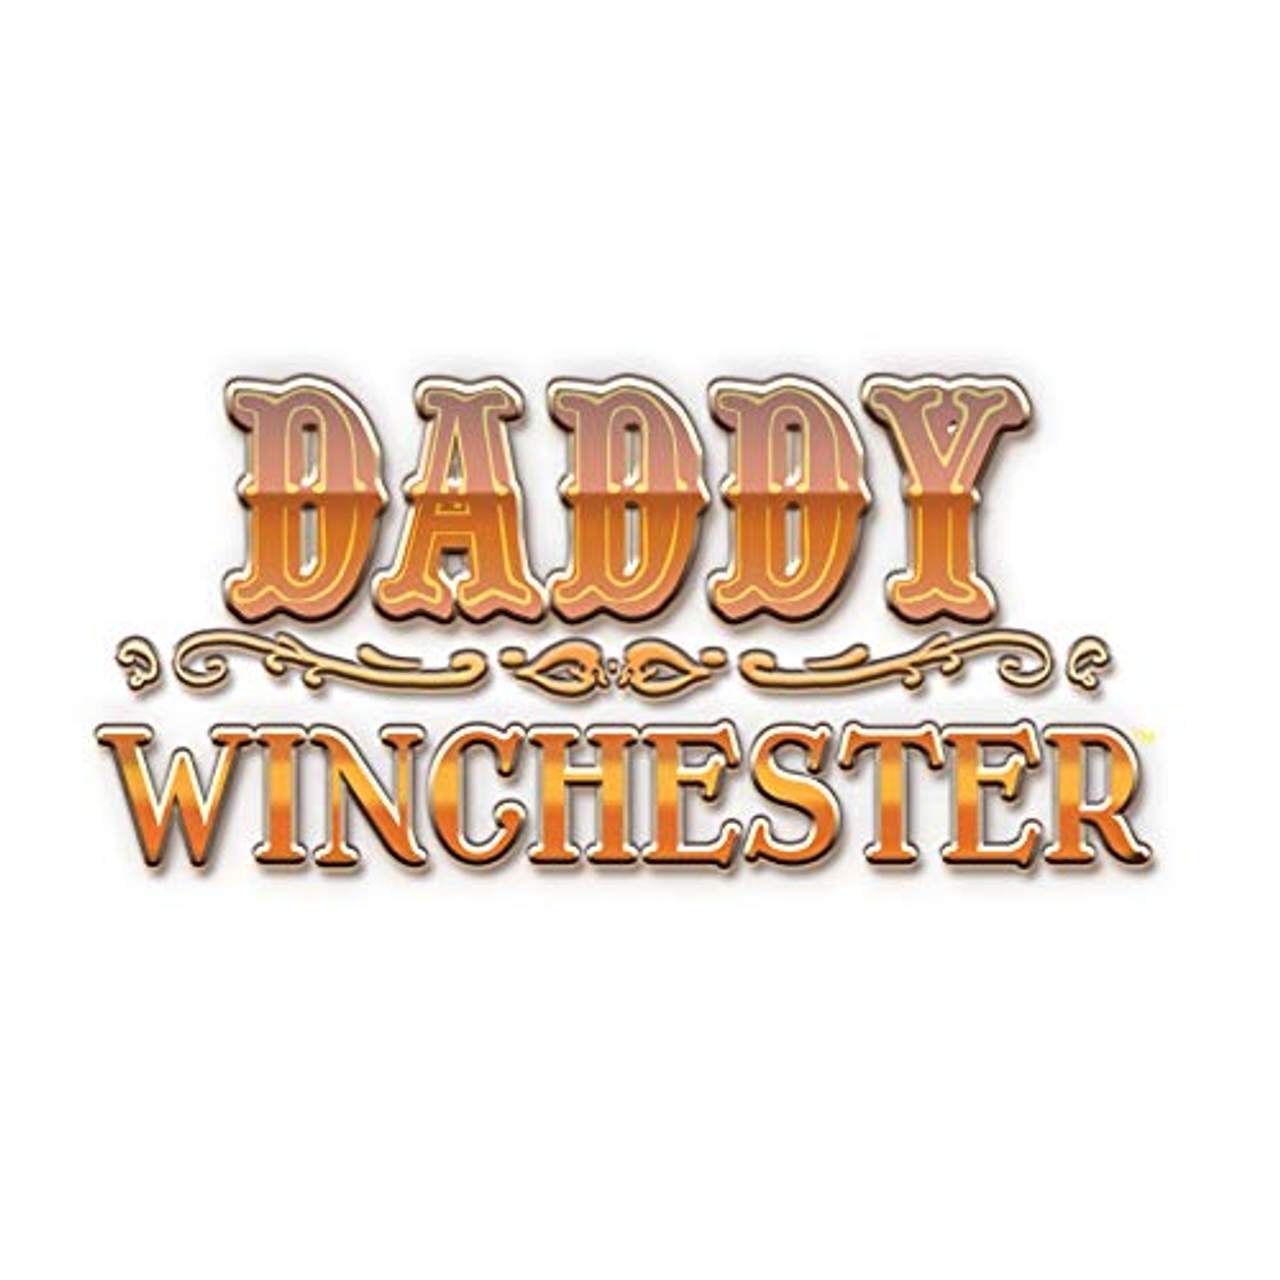 Huch Daddy Winchester Familienspiel